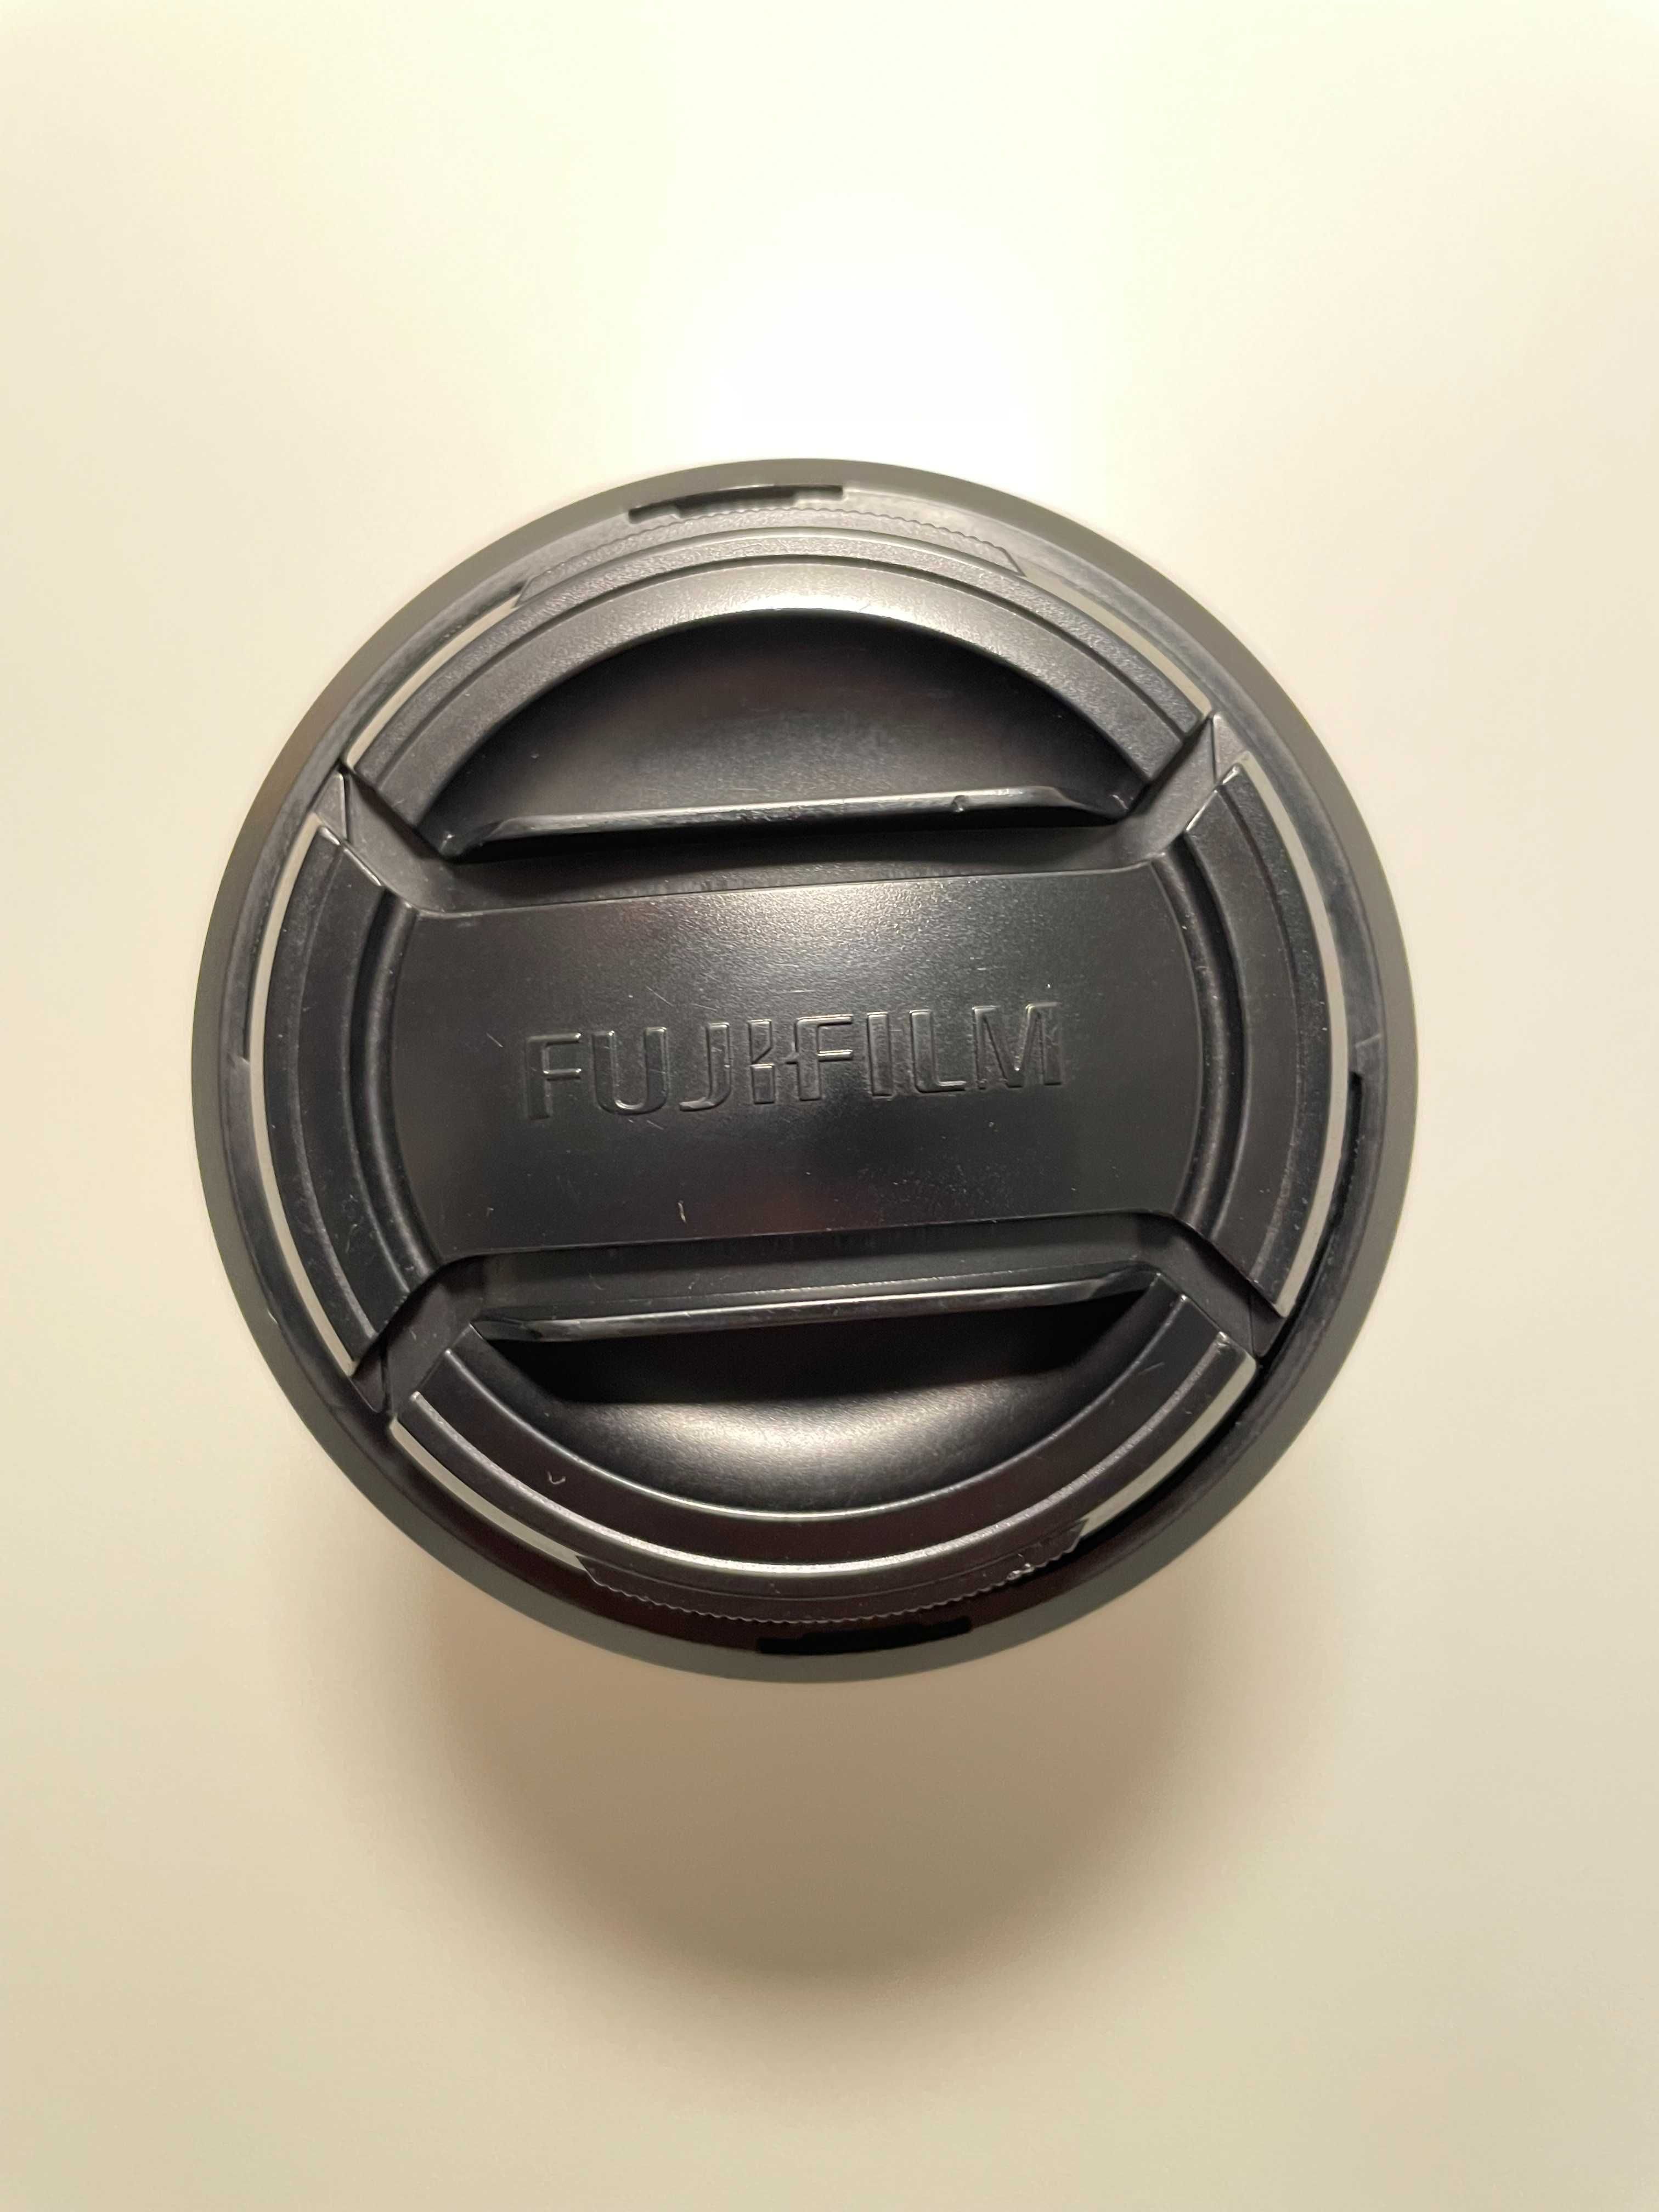 Fujifilm xf 18-55 f2.8-4